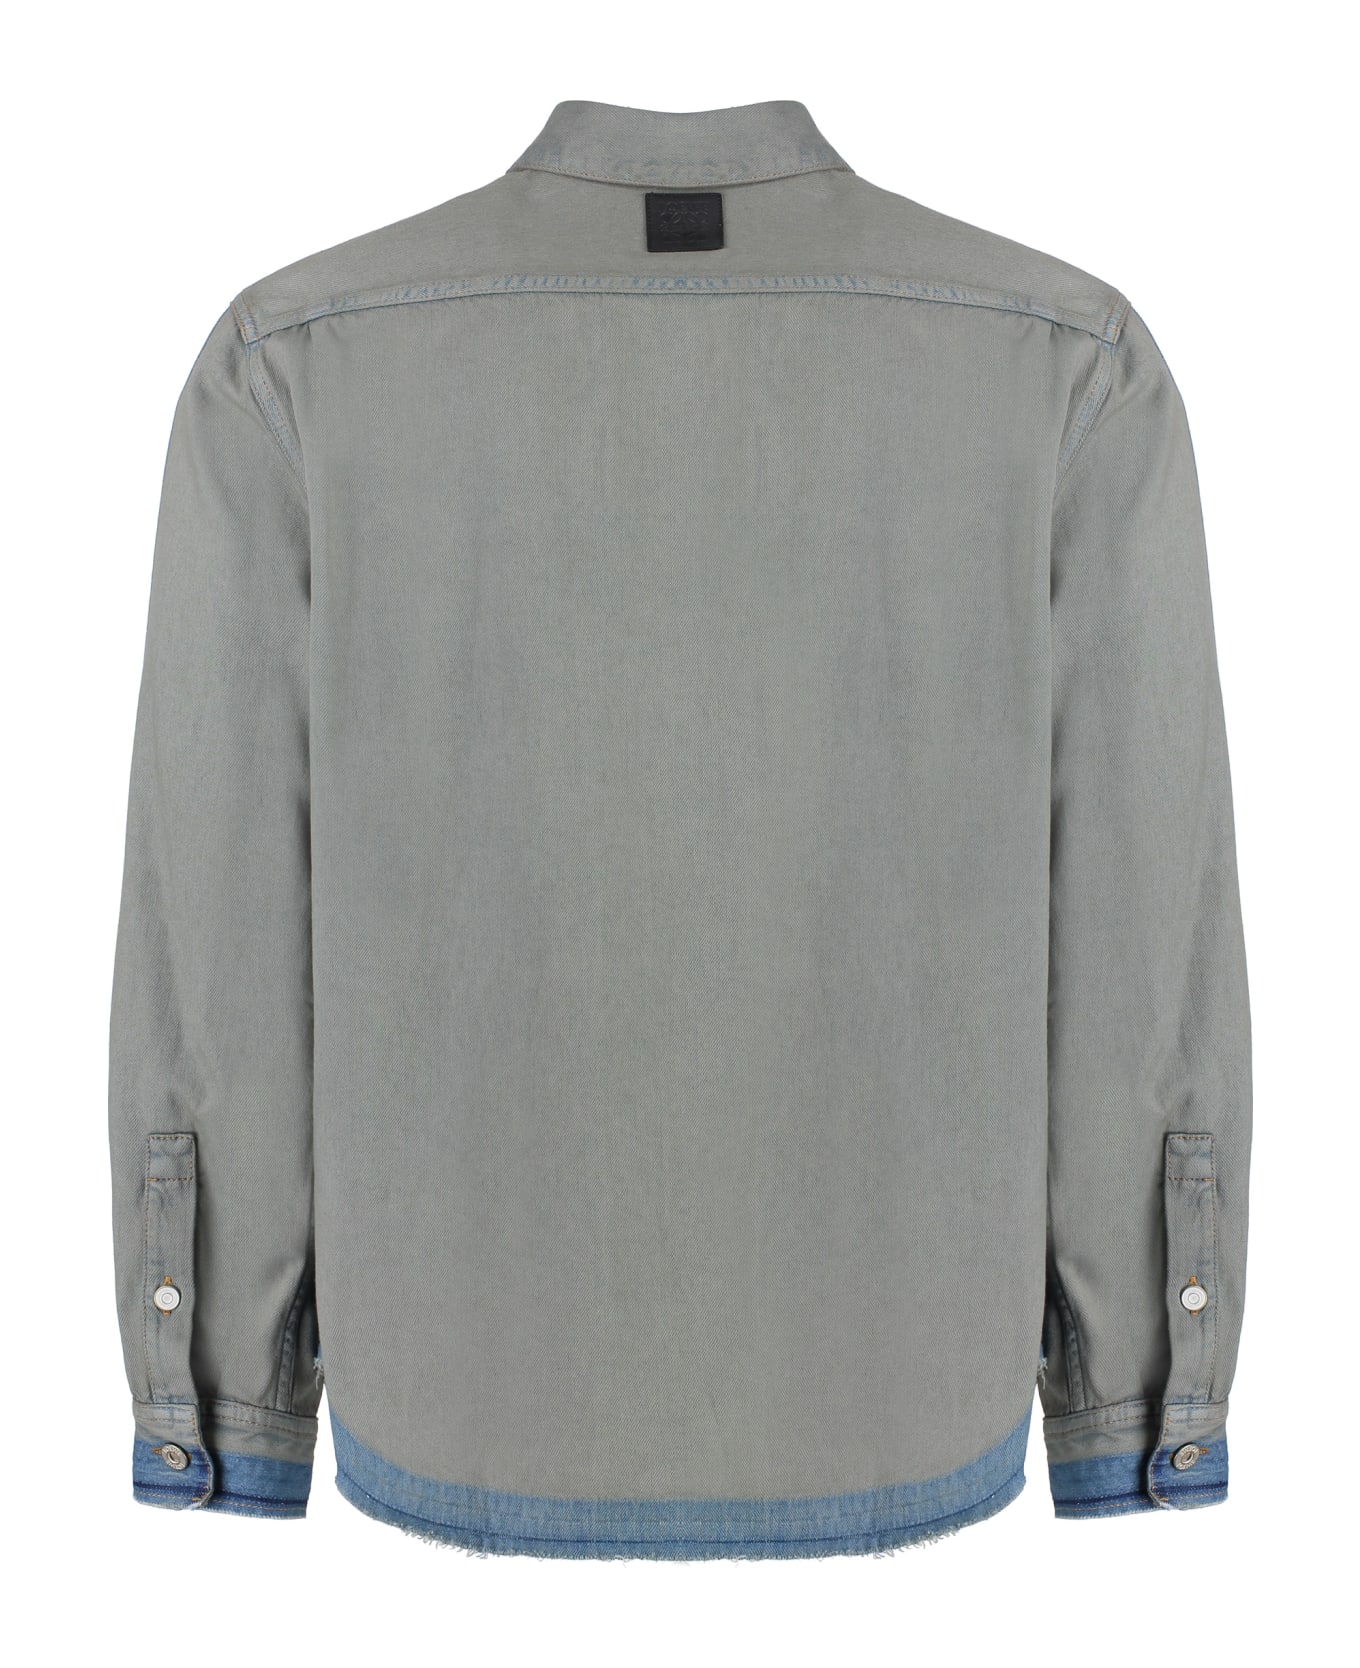 Loewe Denim Shirt - grey シャツ